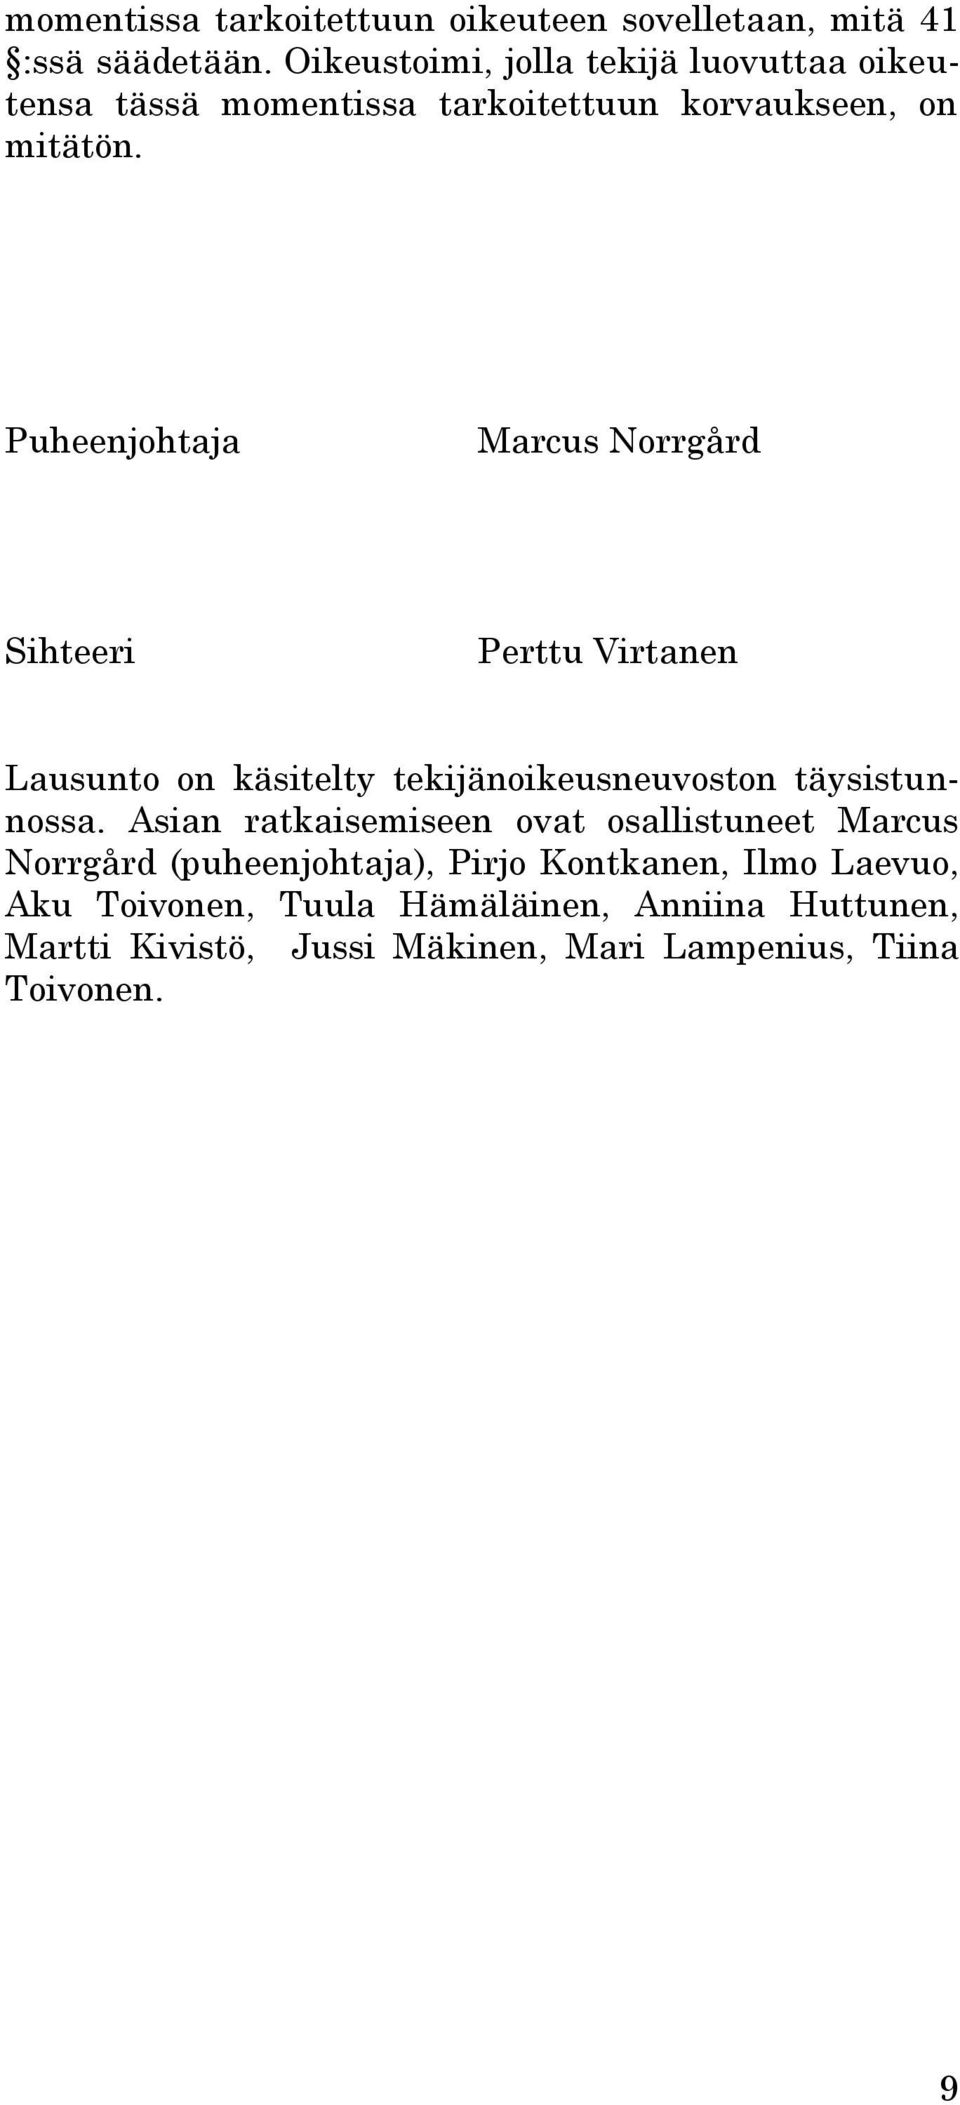 Puheenjohtaja Marcus Norrgård Sihteeri Perttu Virtanen Lausunto on käsitelty tekijänoikeusneuvoston täysistunnossa.